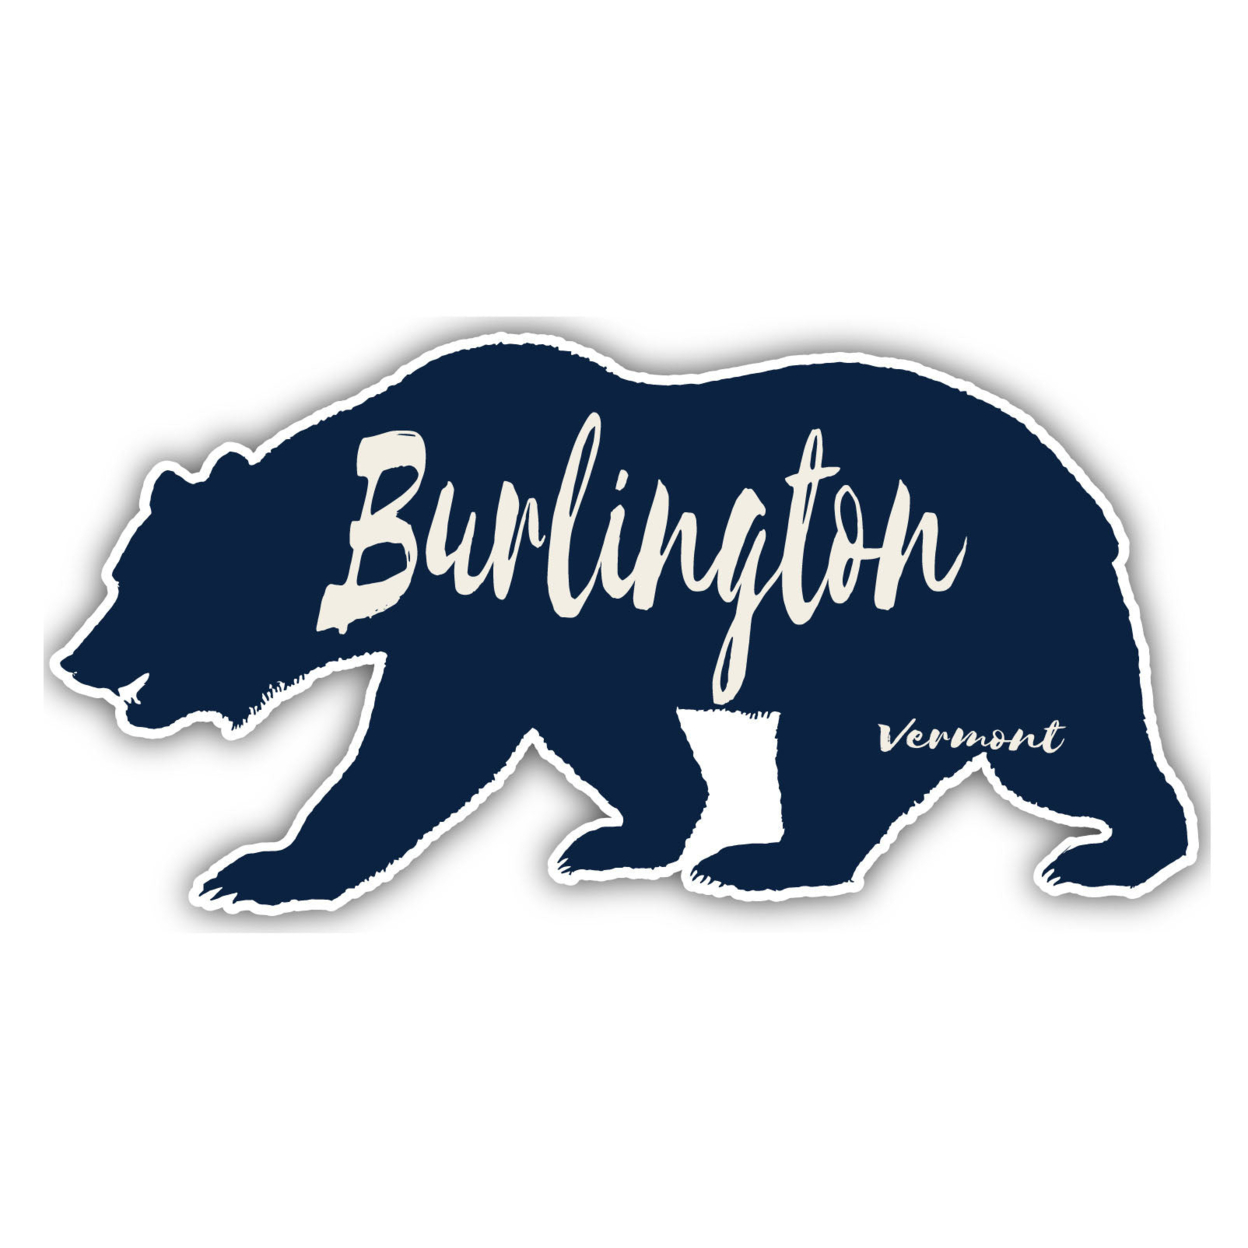 Burlington Vermont Souvenir Decorative Stickers (Choose Theme And Size) - 4-Pack, 10-Inch, Tent